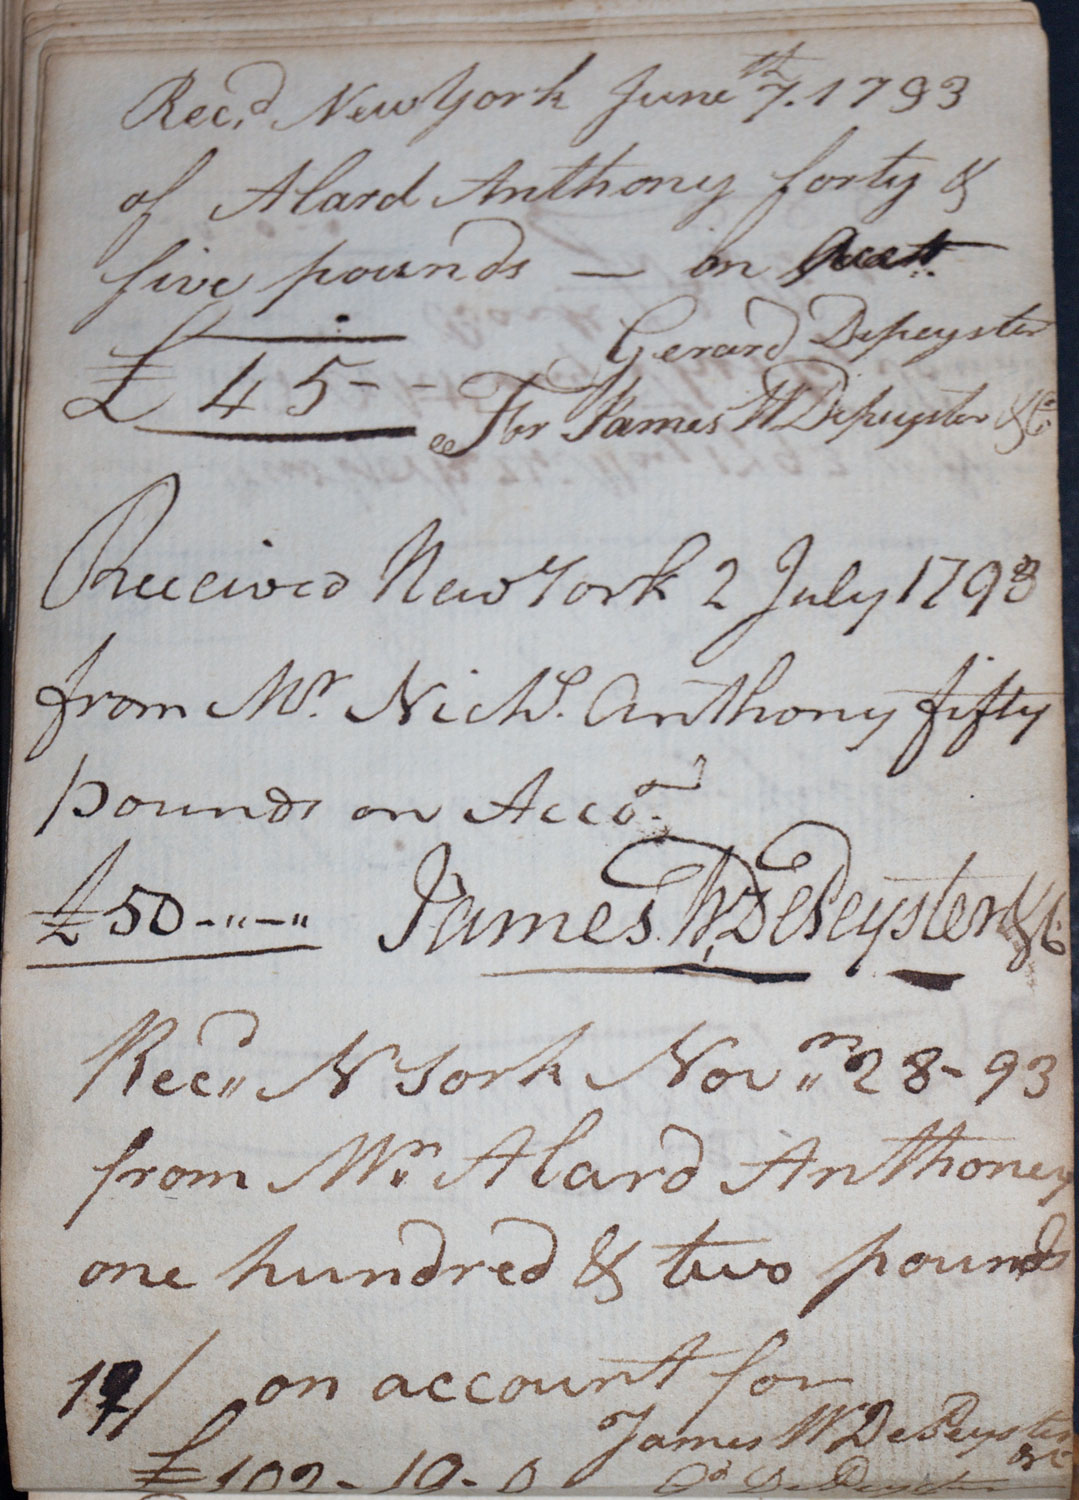 June 7, 1792 -Gerard (Gerardus) Depeyster / July 2, 1793 - James W. DePeyster / Nov. 28, 1793 Gerard (Gerardus) Depeyster 